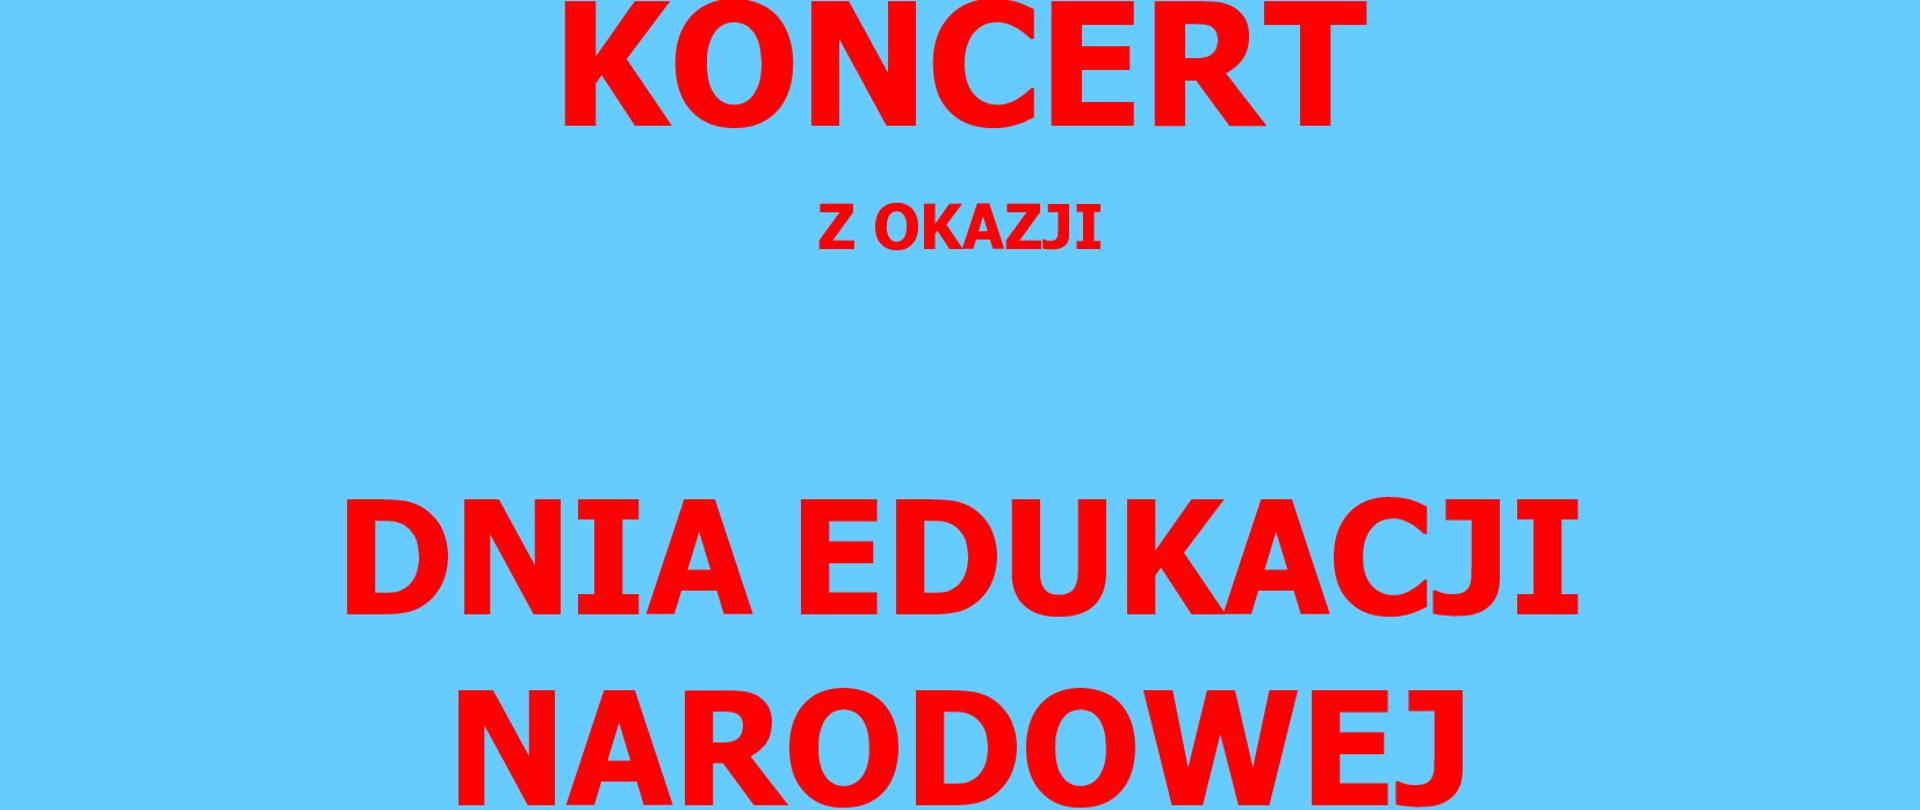 Plakat informujący o koncercie z okazji Dnia Edukacji Narodowej. Czerwone napisy na niebieskim tle.